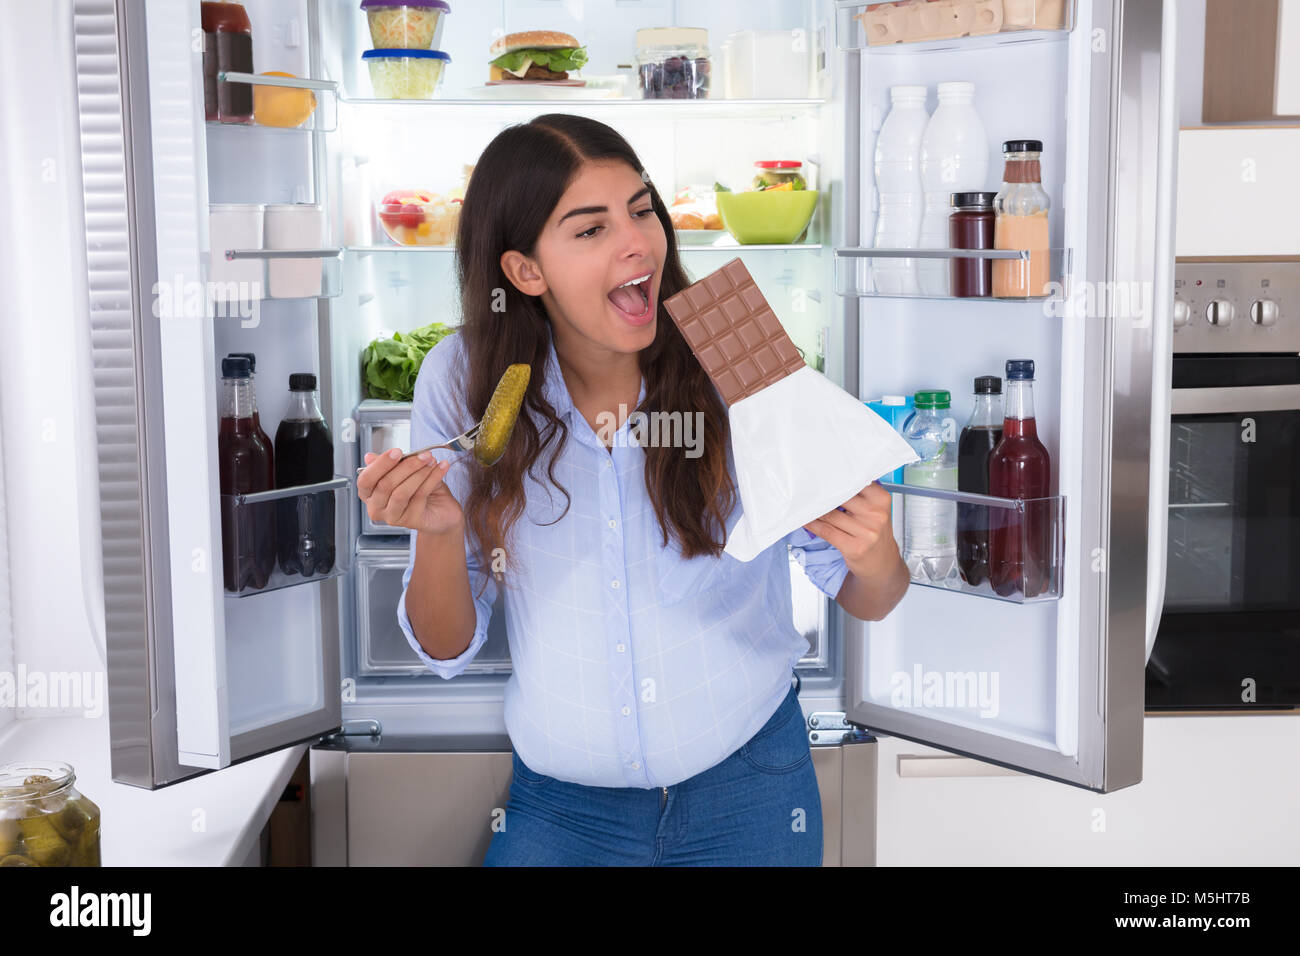 Junge Frau Schokolade essen in der Nähe von offenen Kühlschrank Stockfoto